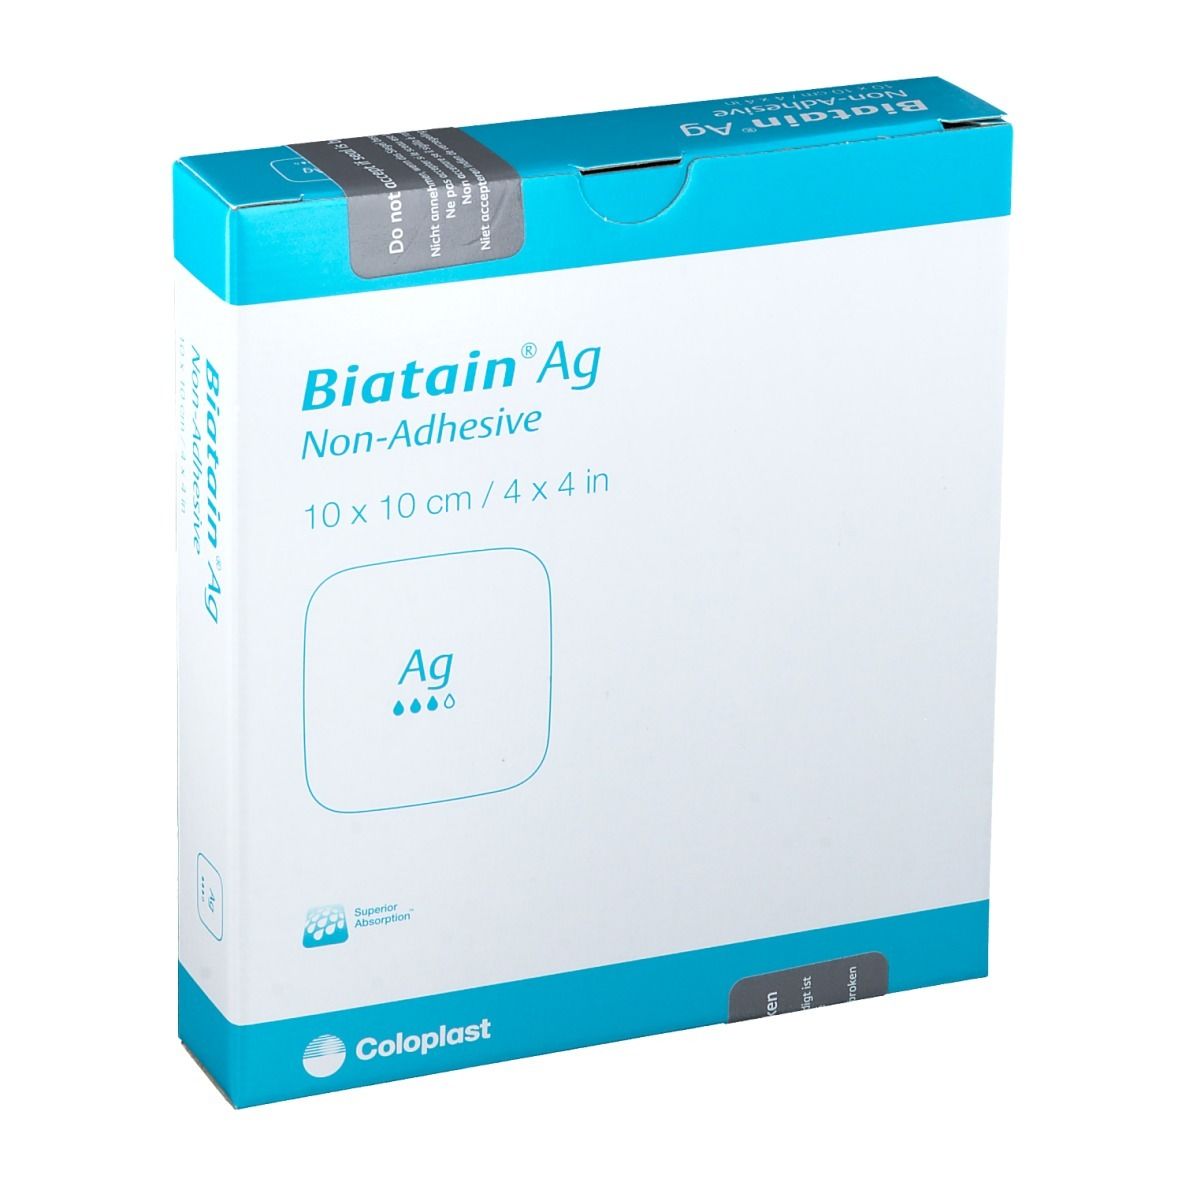 BIATAIN® Ag Schaumverband mit Silber nicht-haftend 10x10cm